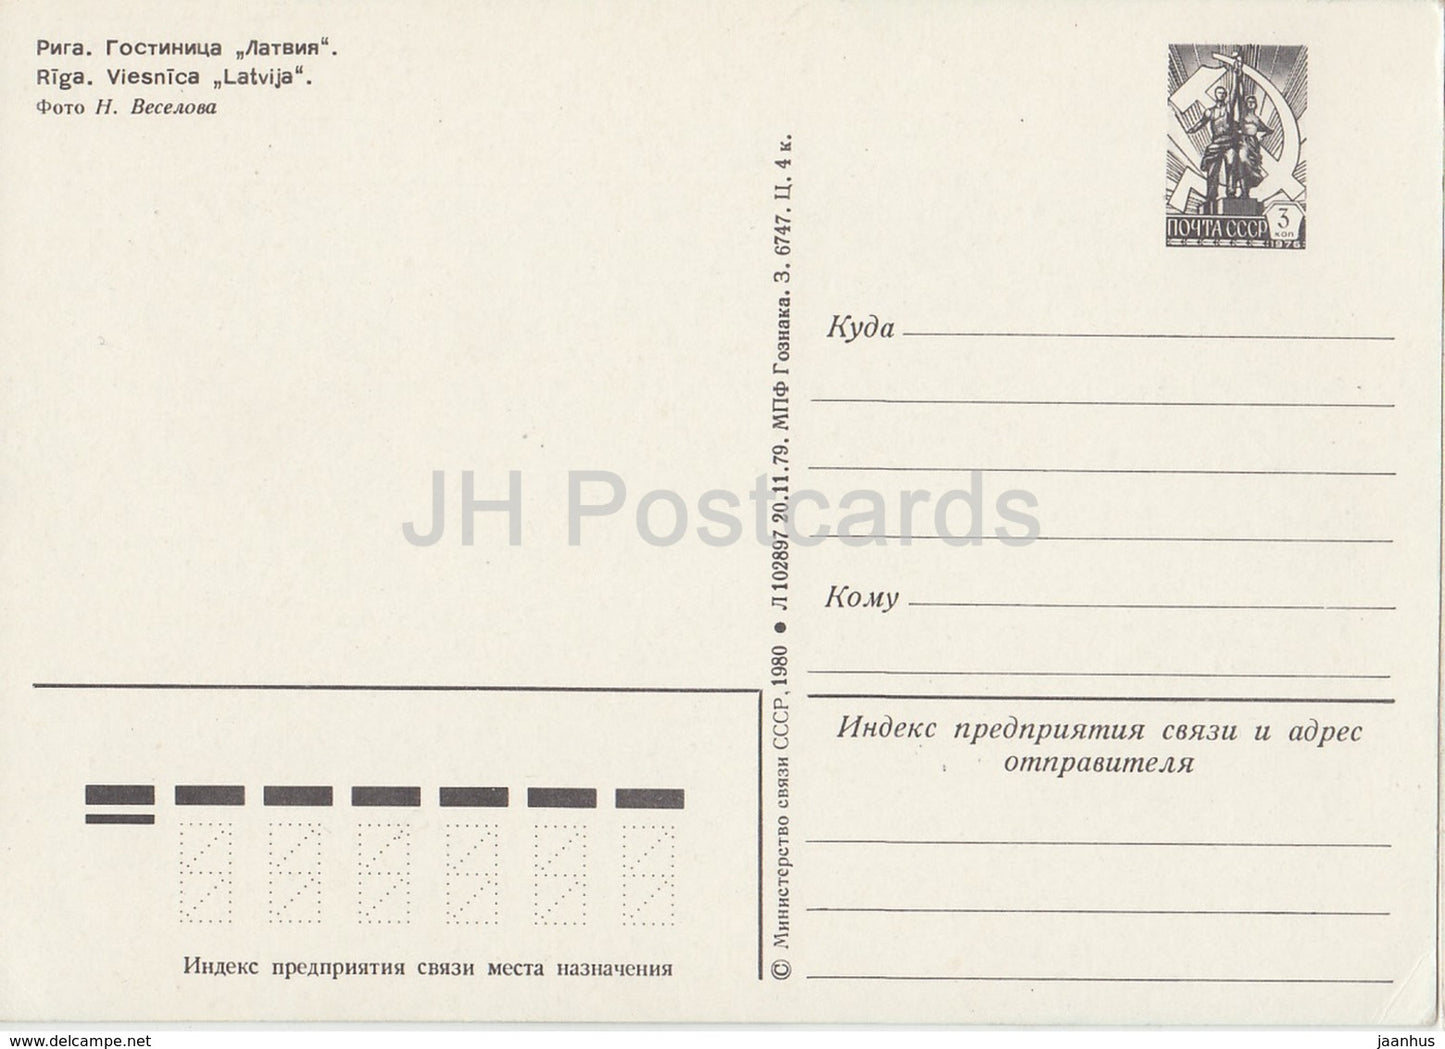 Riga - hotel Latvia - postal stationery - 1980 - Latvia USSR -  unused